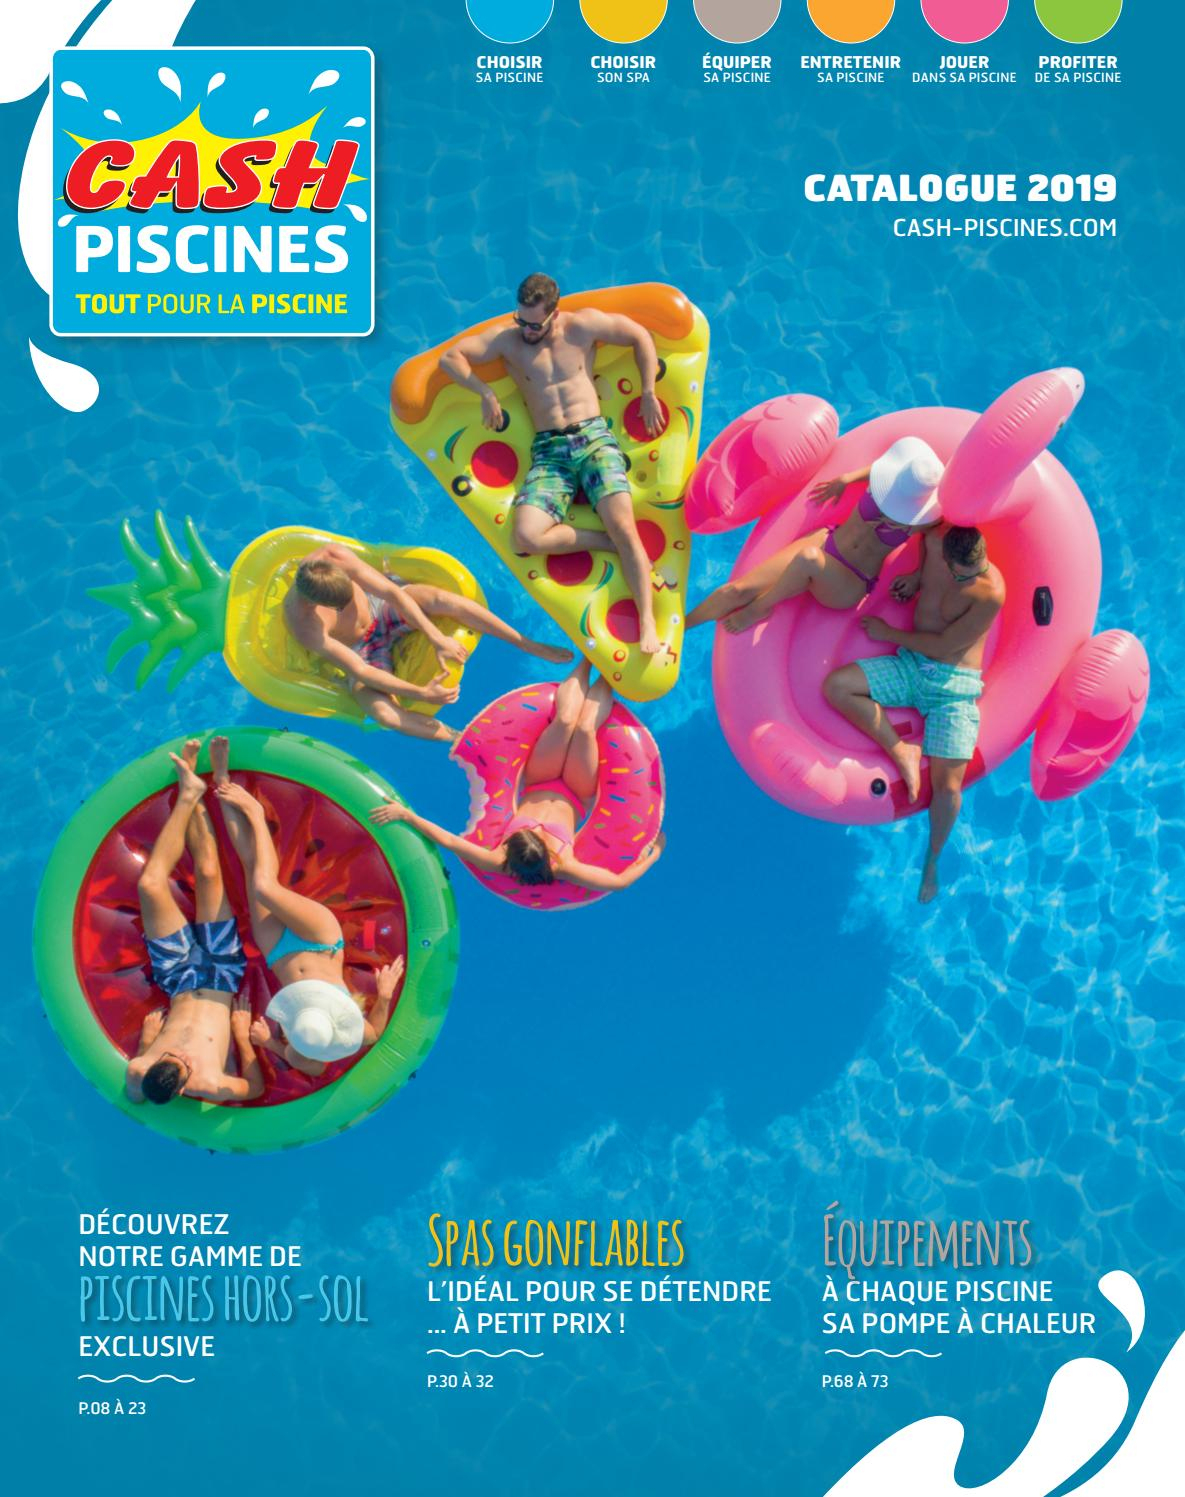 Catalogue Cash Piscines 2019 By Cashpiscines2 - Issuu concernant Cash Piscine Tours